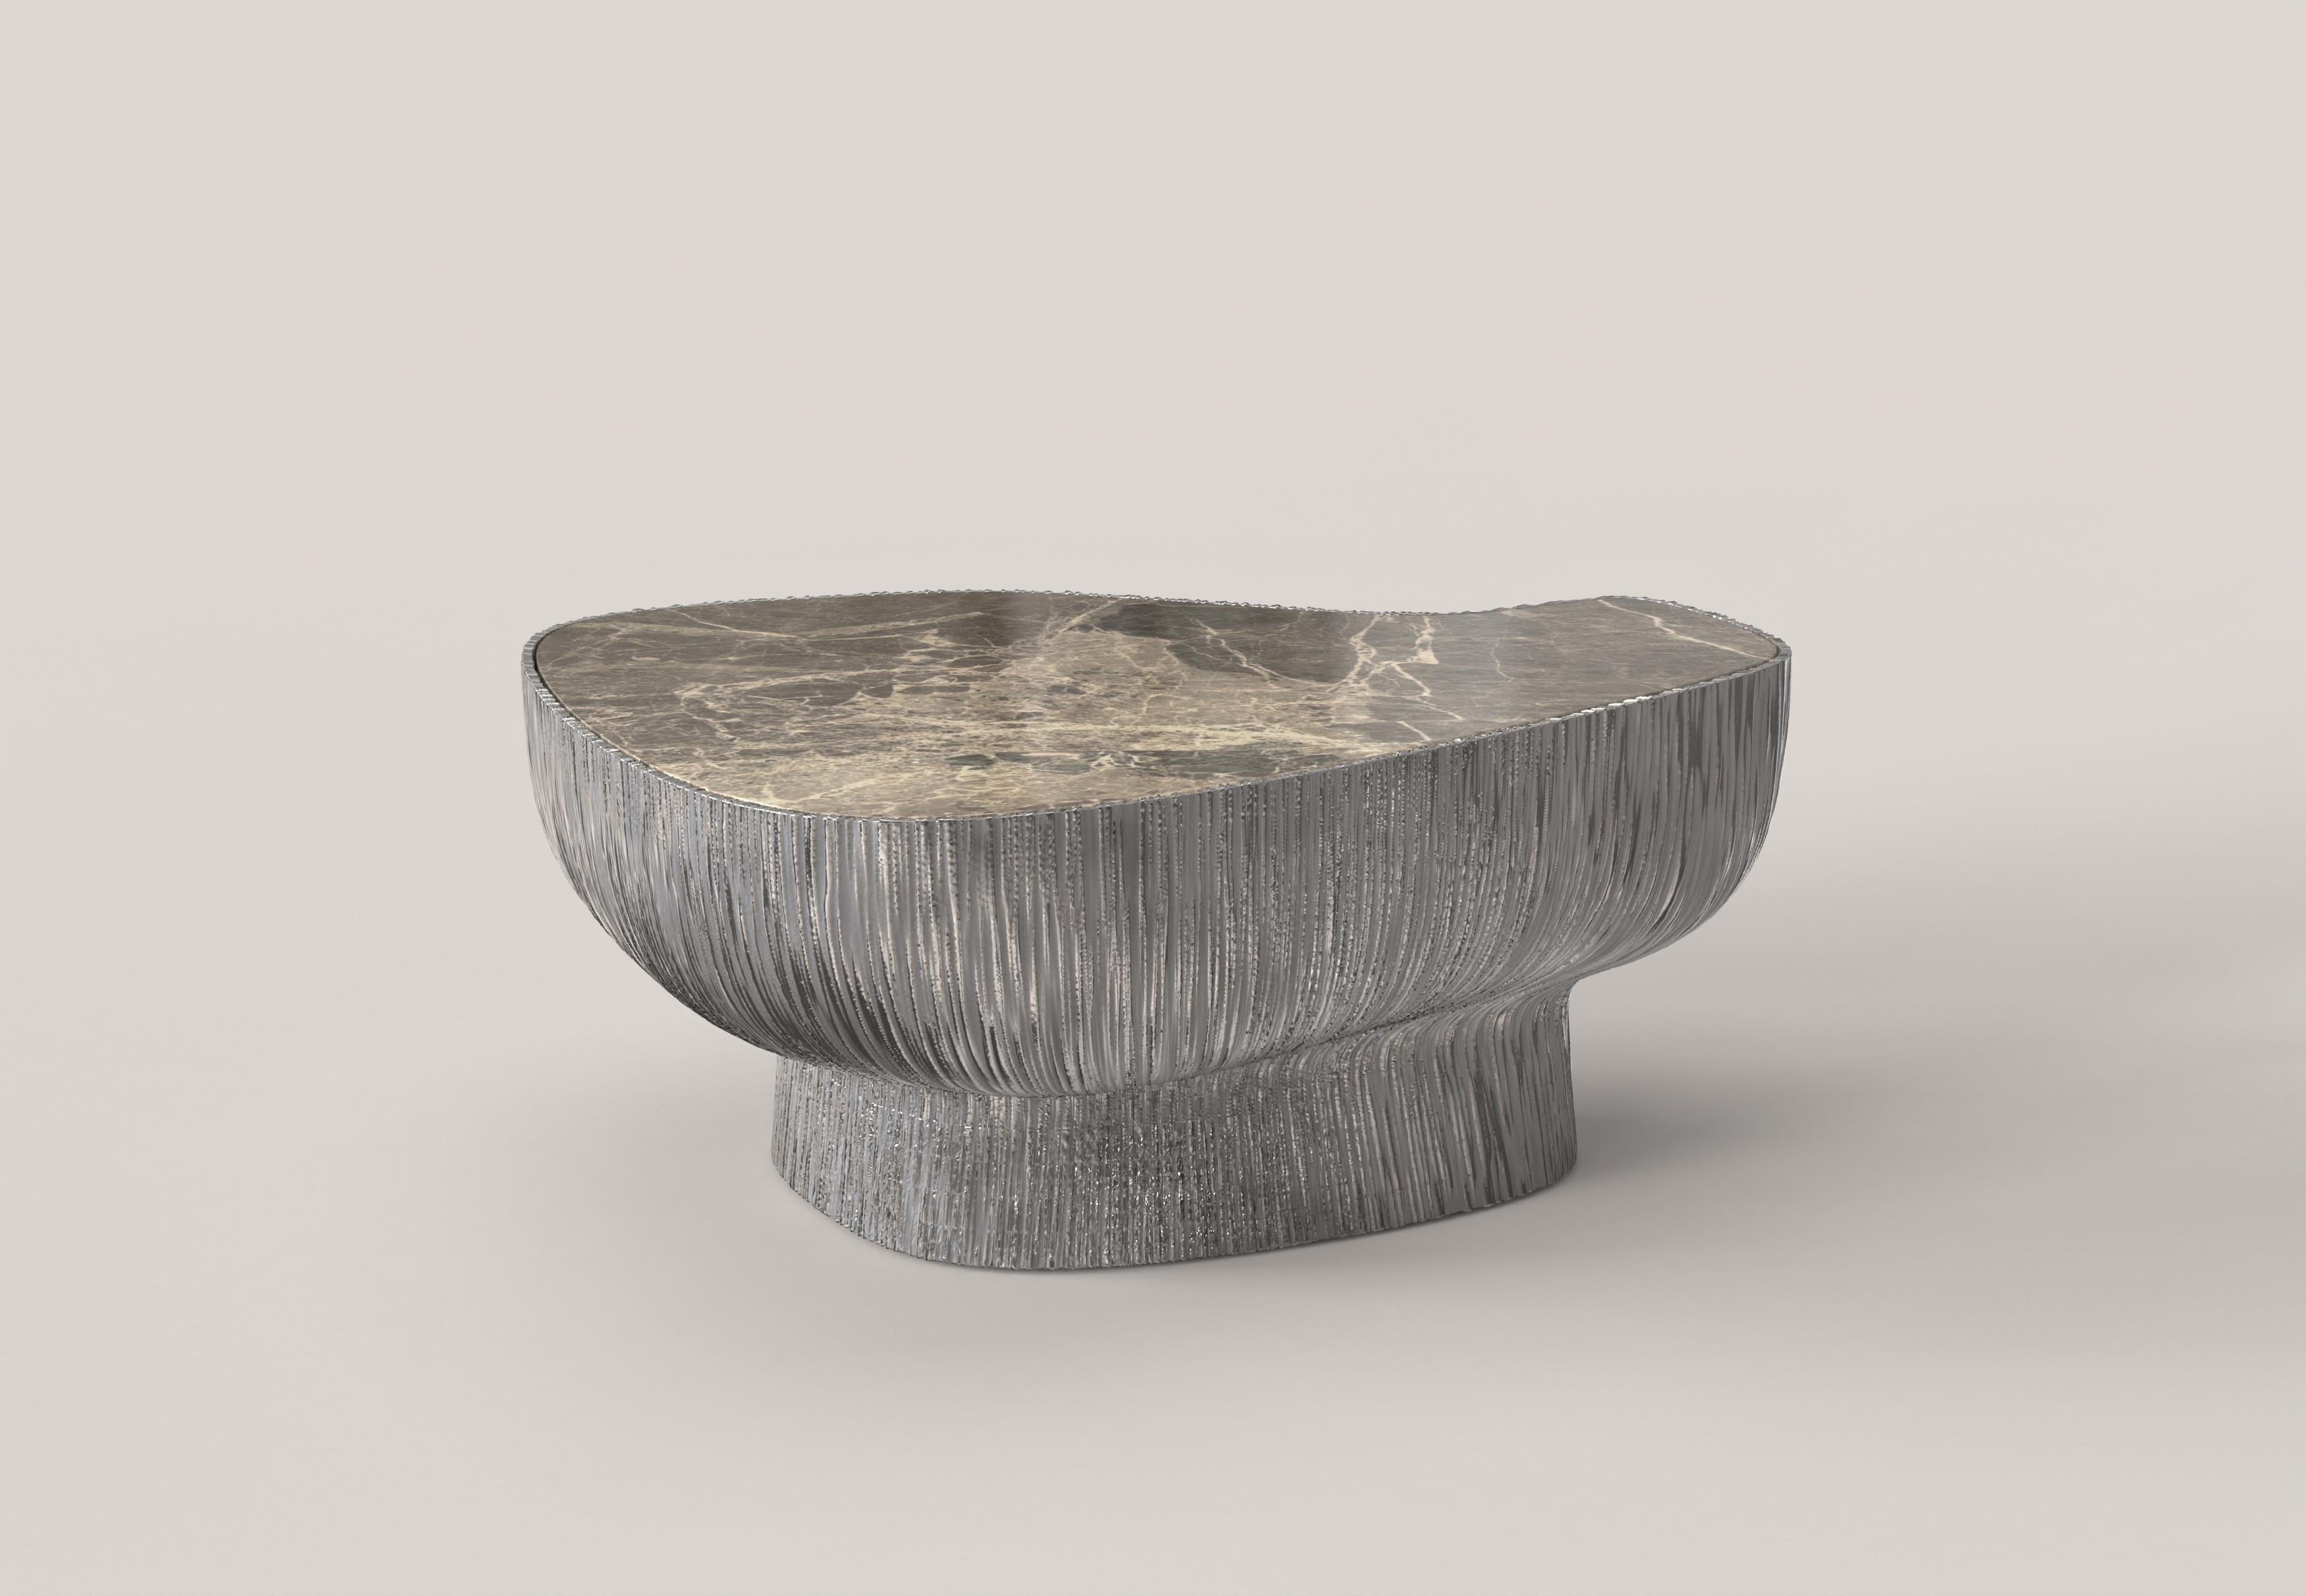 Giava V2 ist ein niedriger Tisch des 21. Jahrhunderts aus Aluminiumguss mit einer außergewöhnlichen Marmorplatte aus Breccia Paradiso. Der Aluminiumguss zeichnet sich durch eine skulpturale Oberfläche mit einer Riffelung aus, die ihm eine